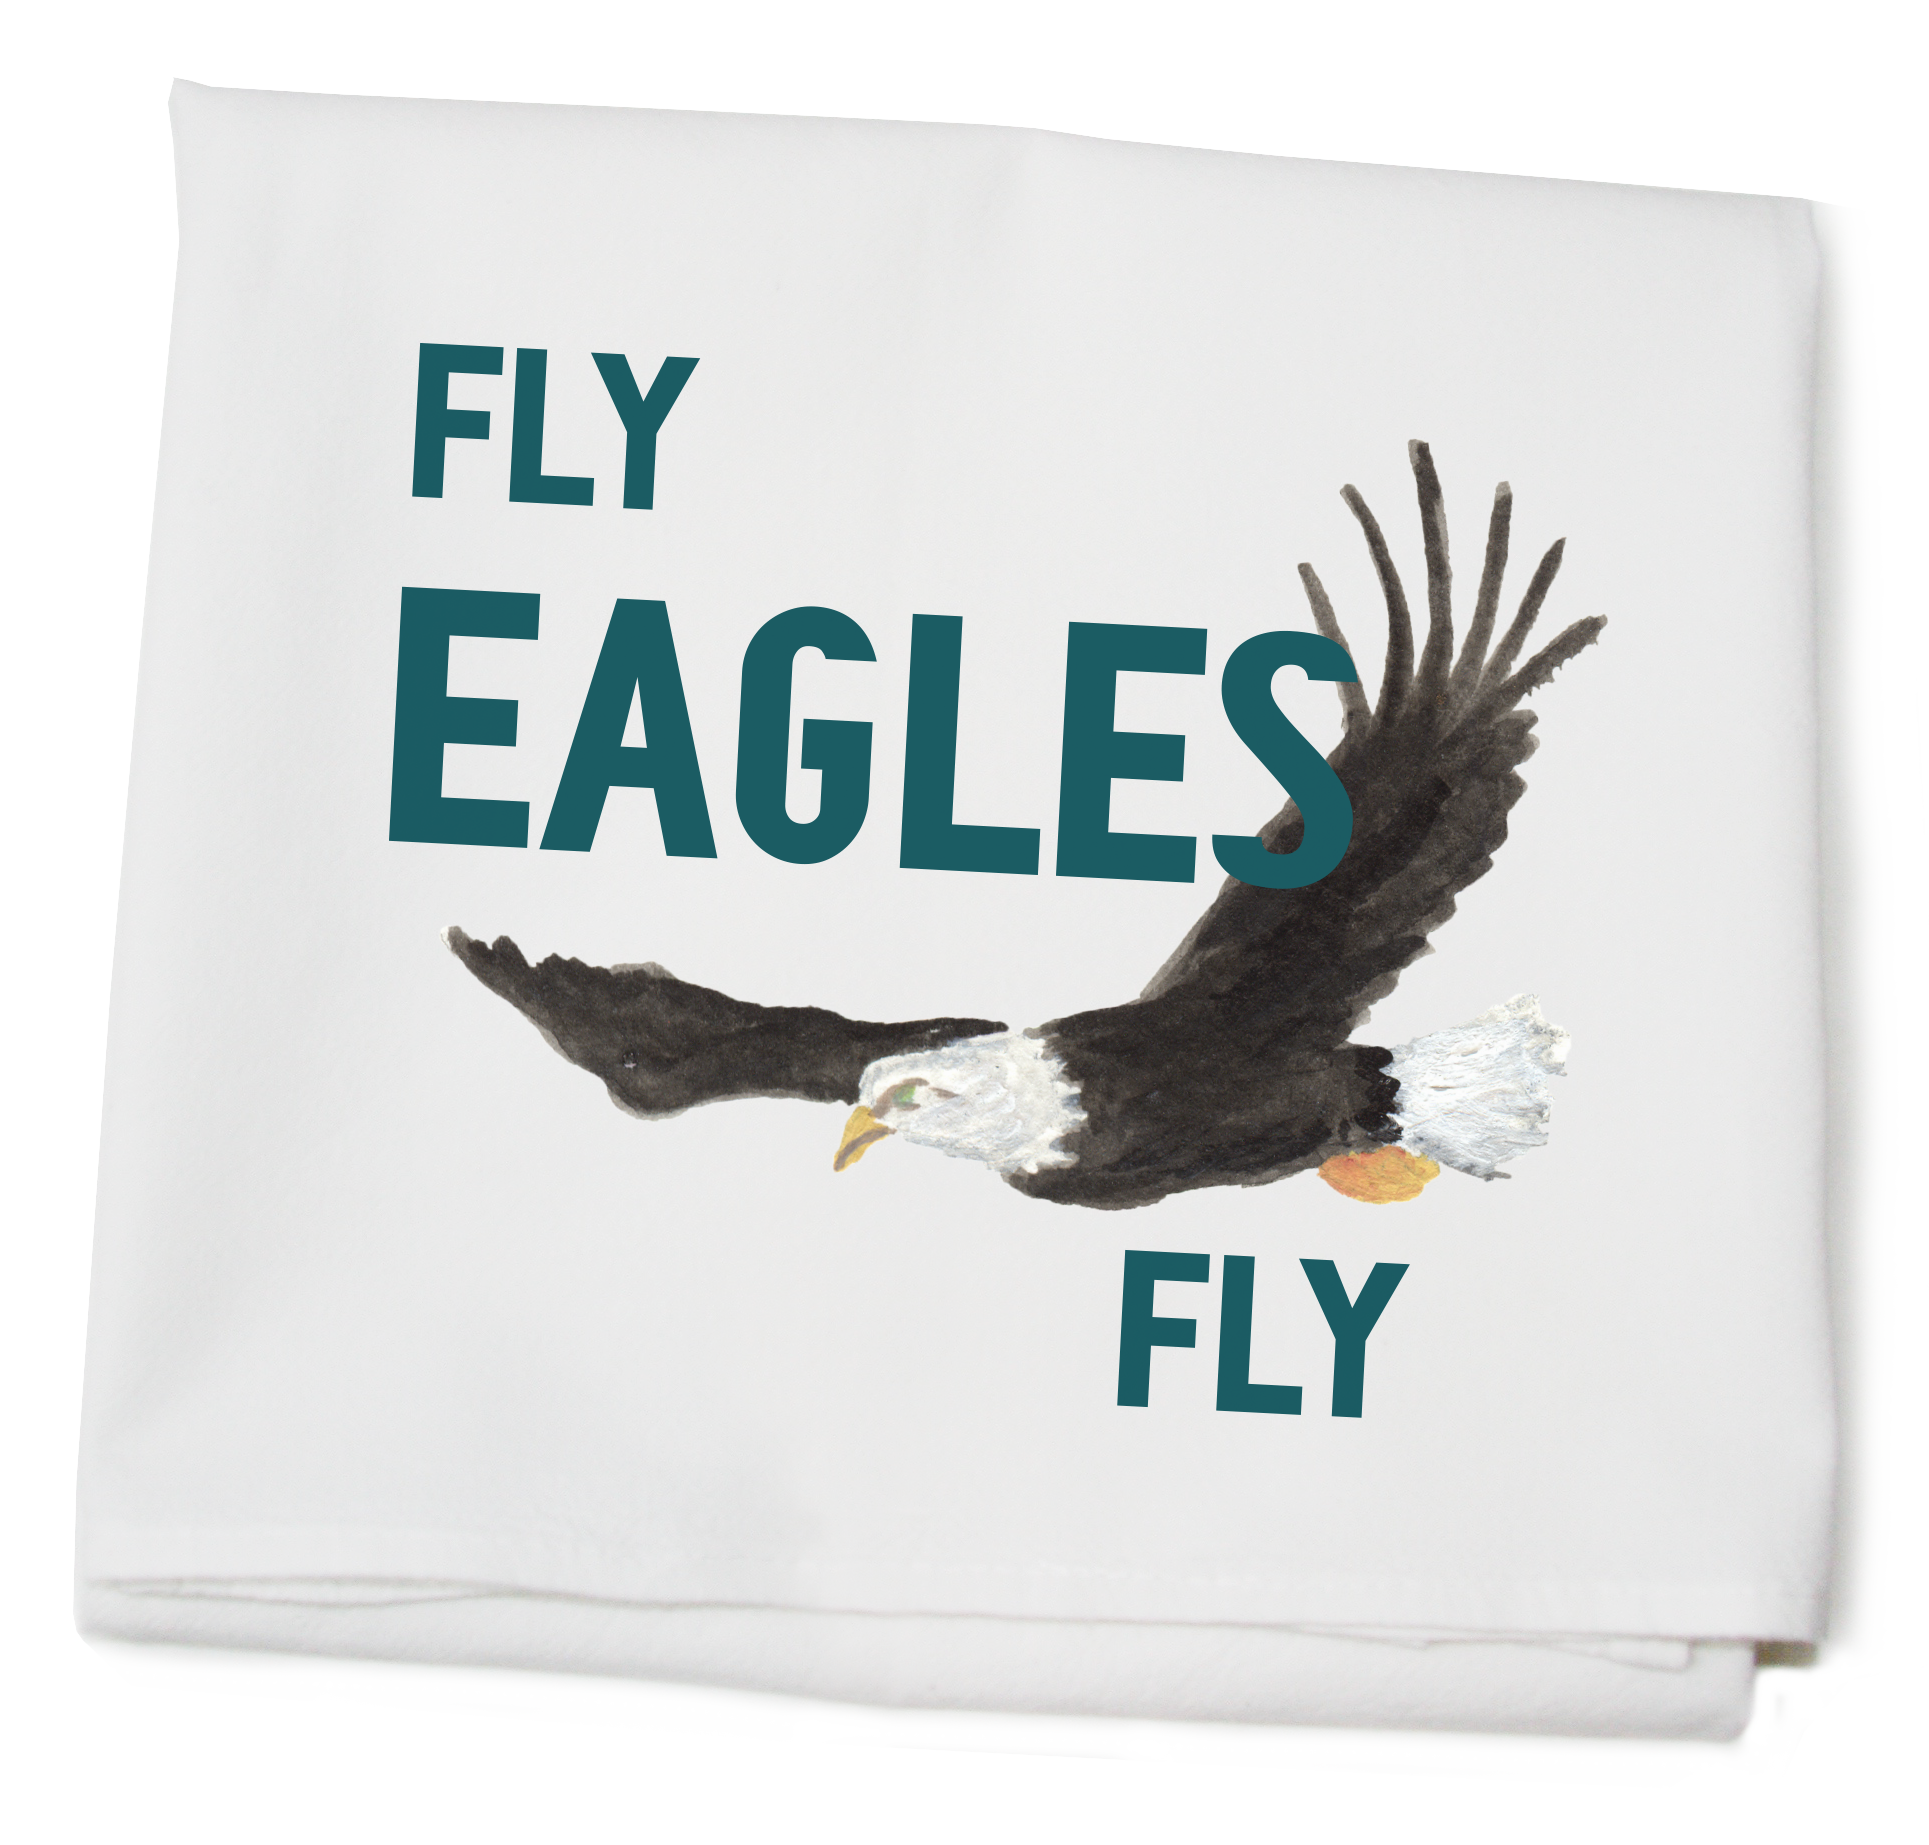 Fly Eagles Fly flour sack towel